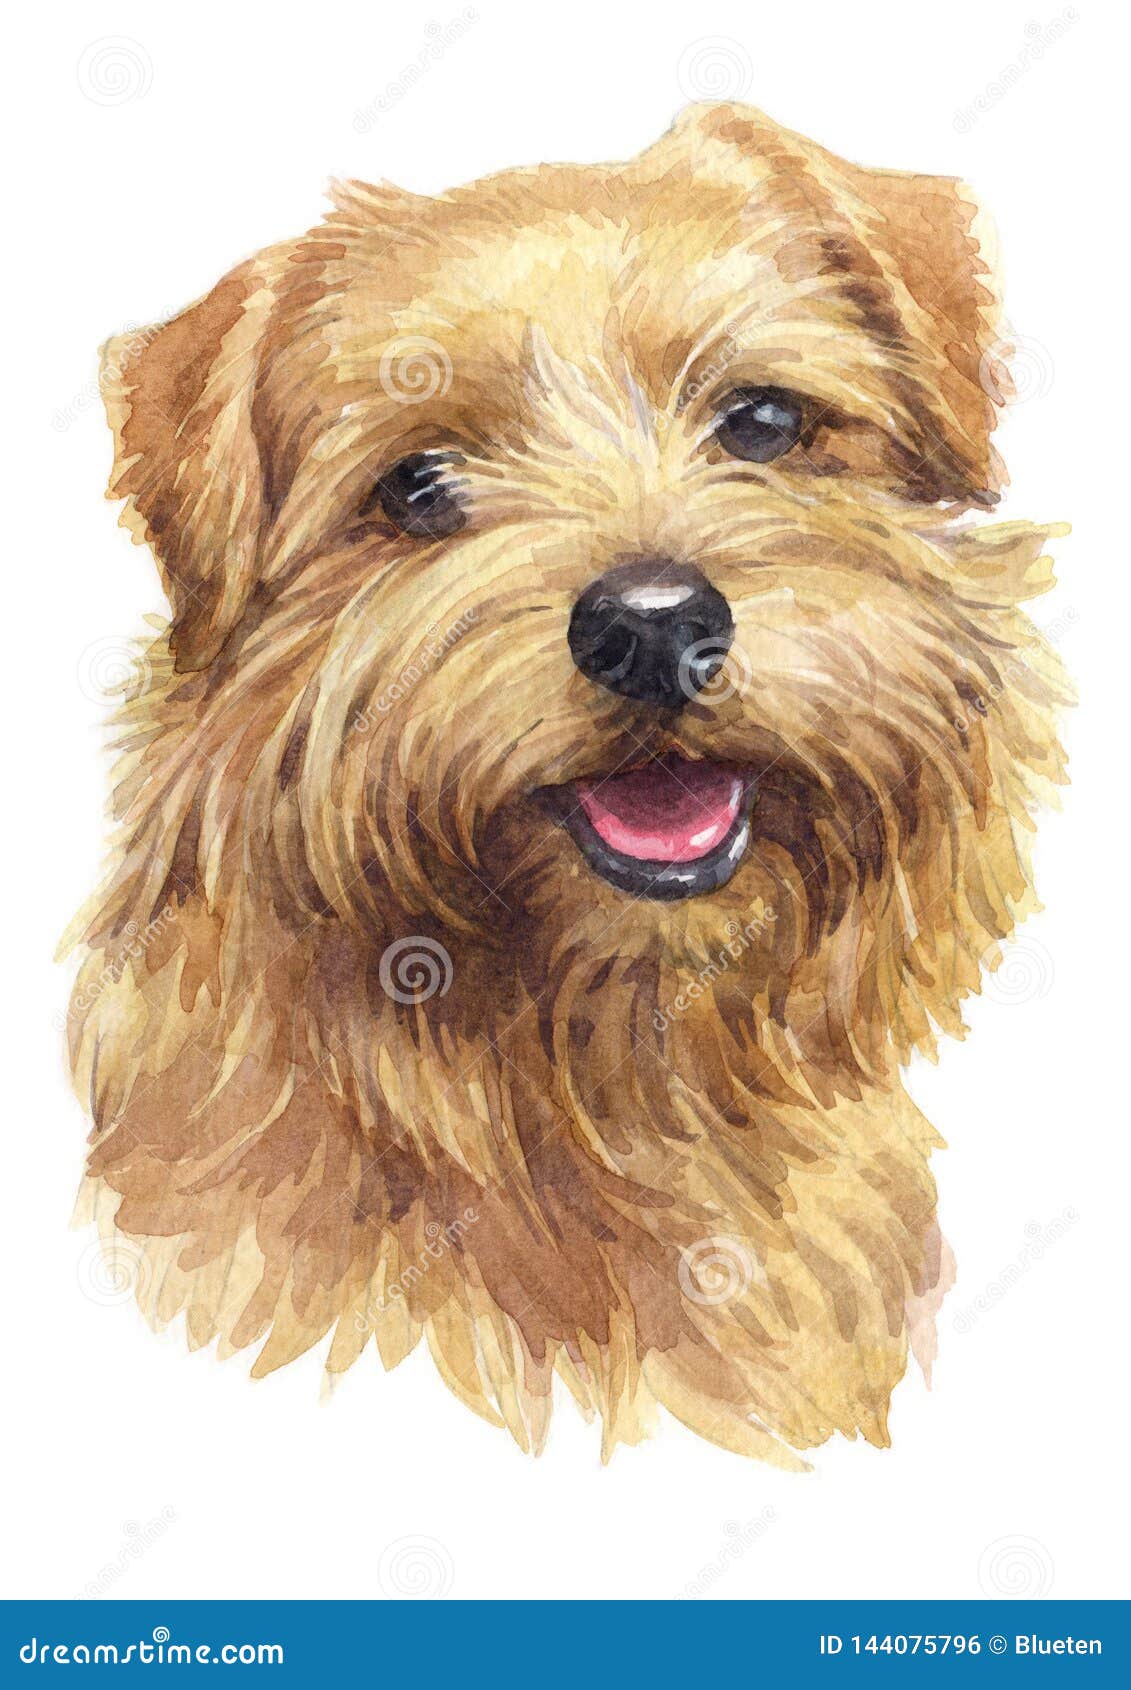 Norfolk Terrier Stock Illustrations 67 Norfolk Terrier Stock Illustrations Vectors Clipart Dreamstime